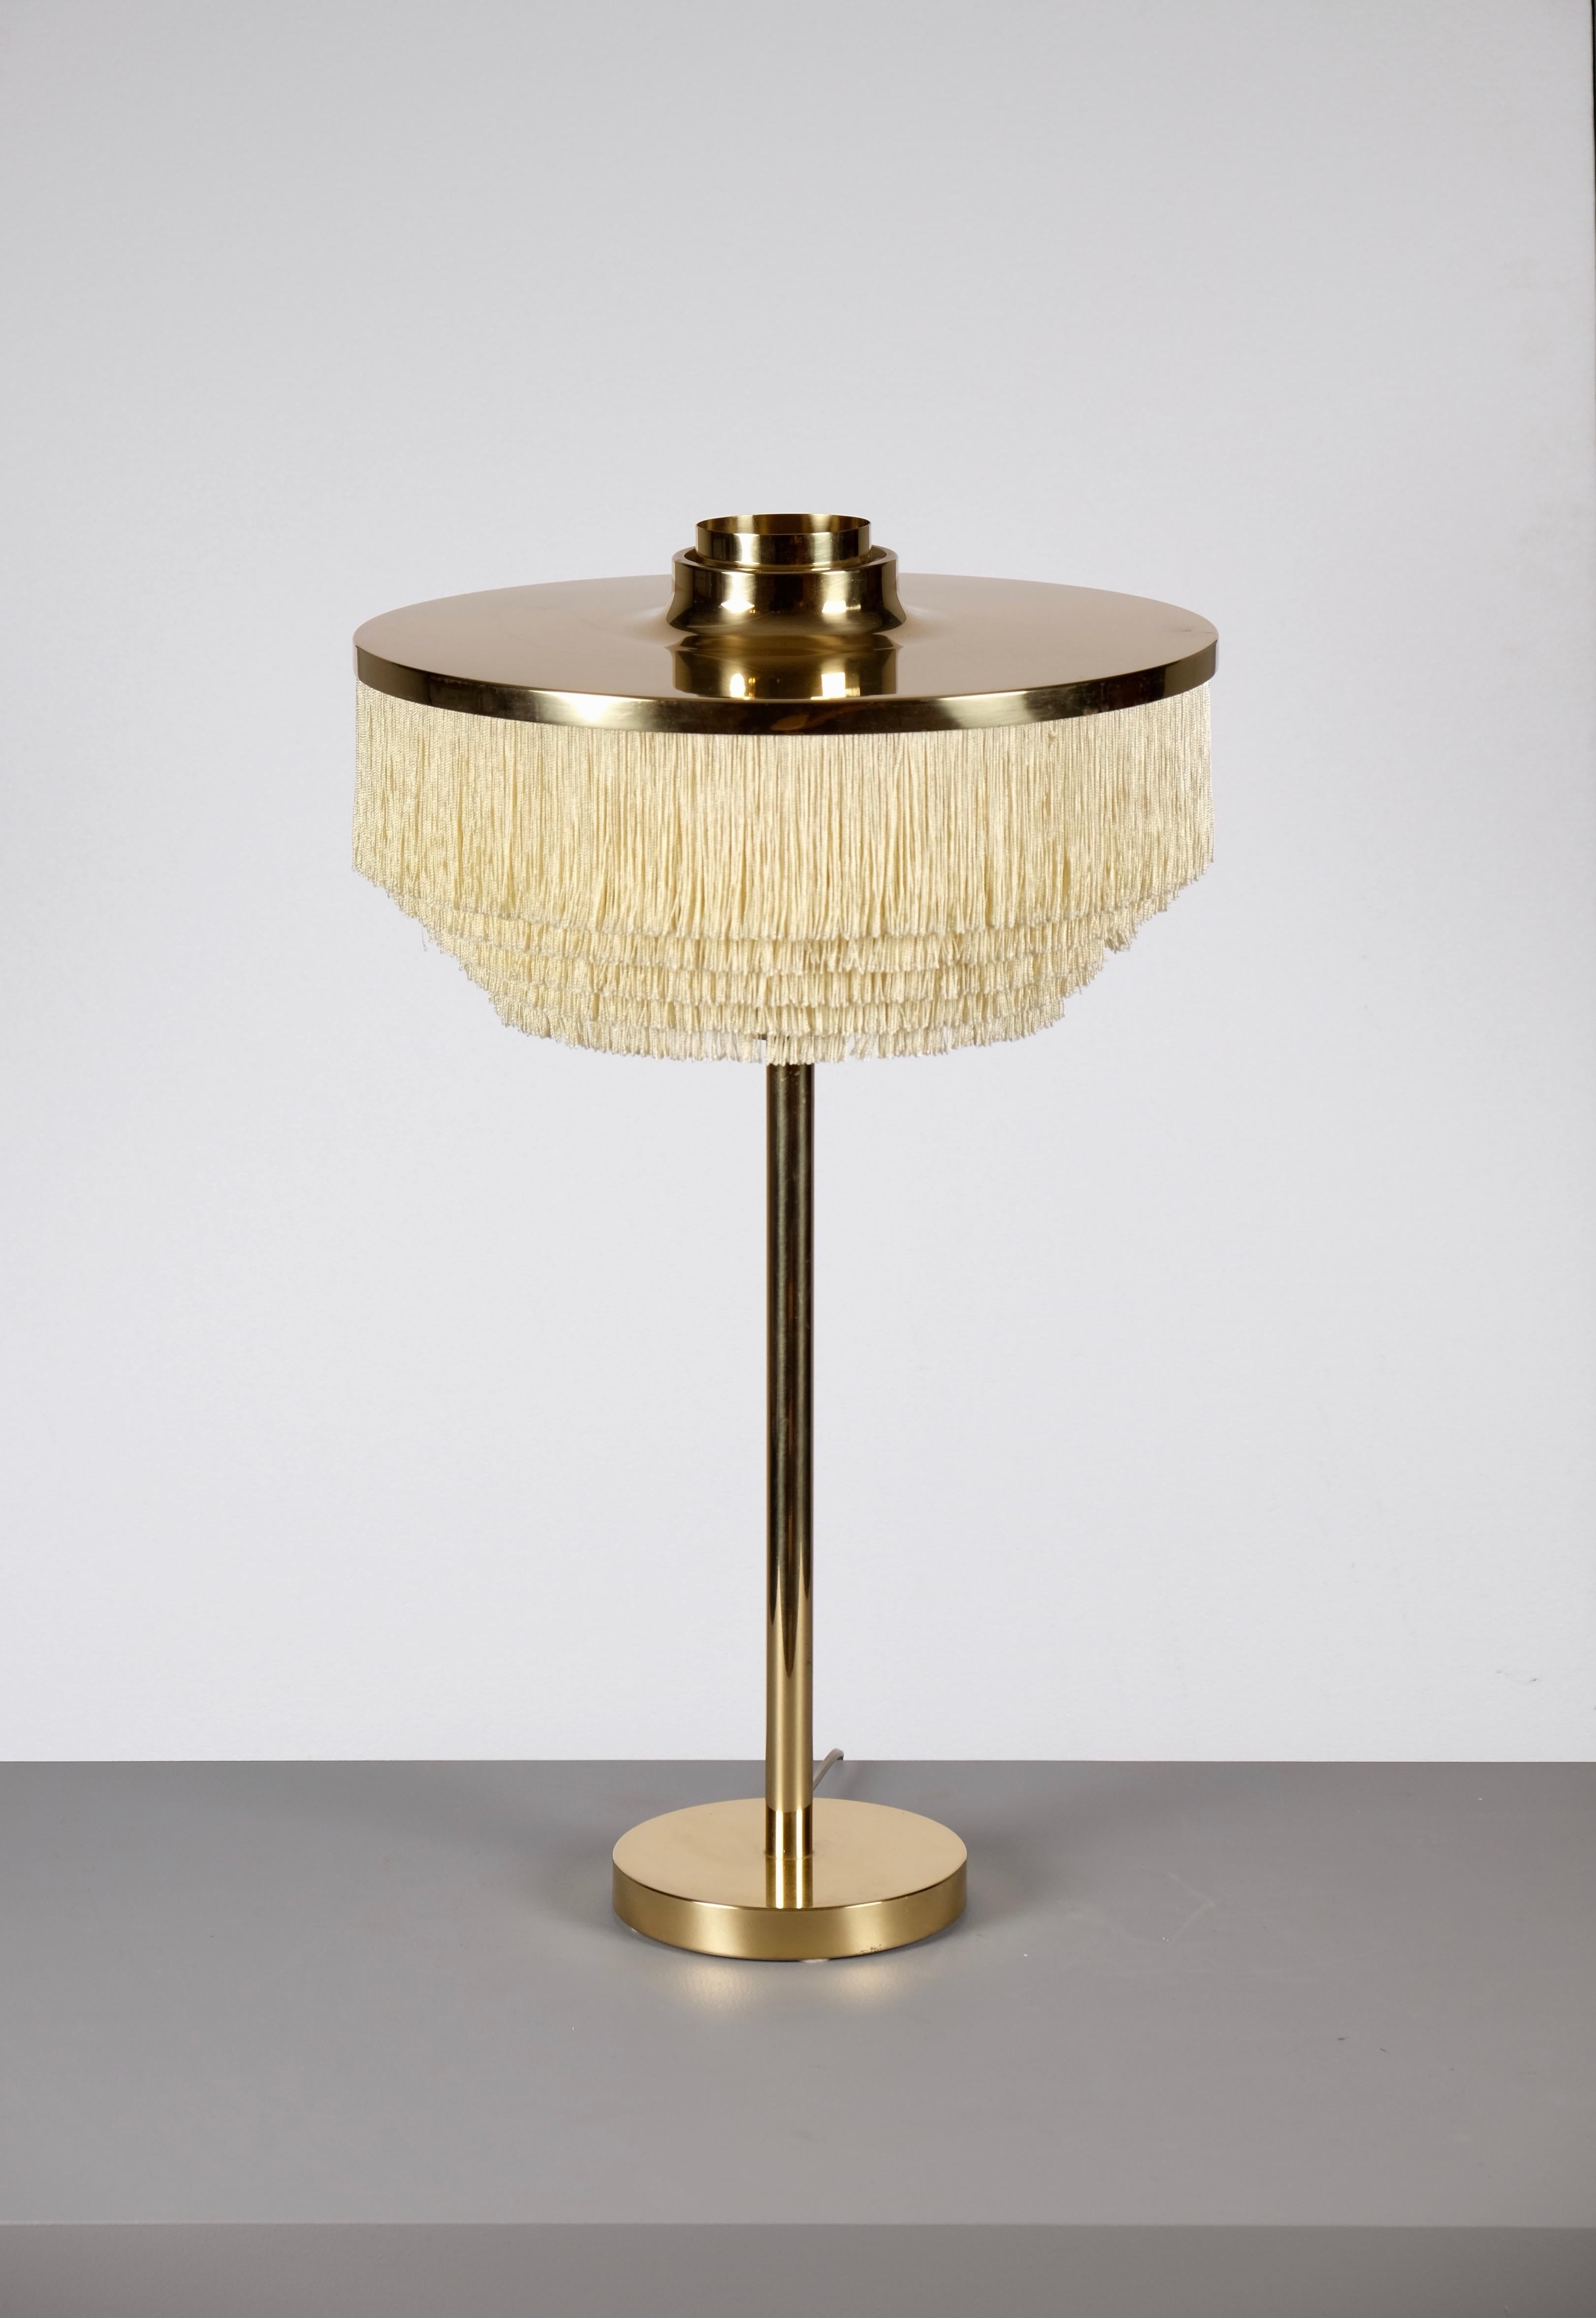 Lampe de table produite par Hans-Agne Jakobsson à Markaryd, Suède.
Nouveau câblage. Excellent état.